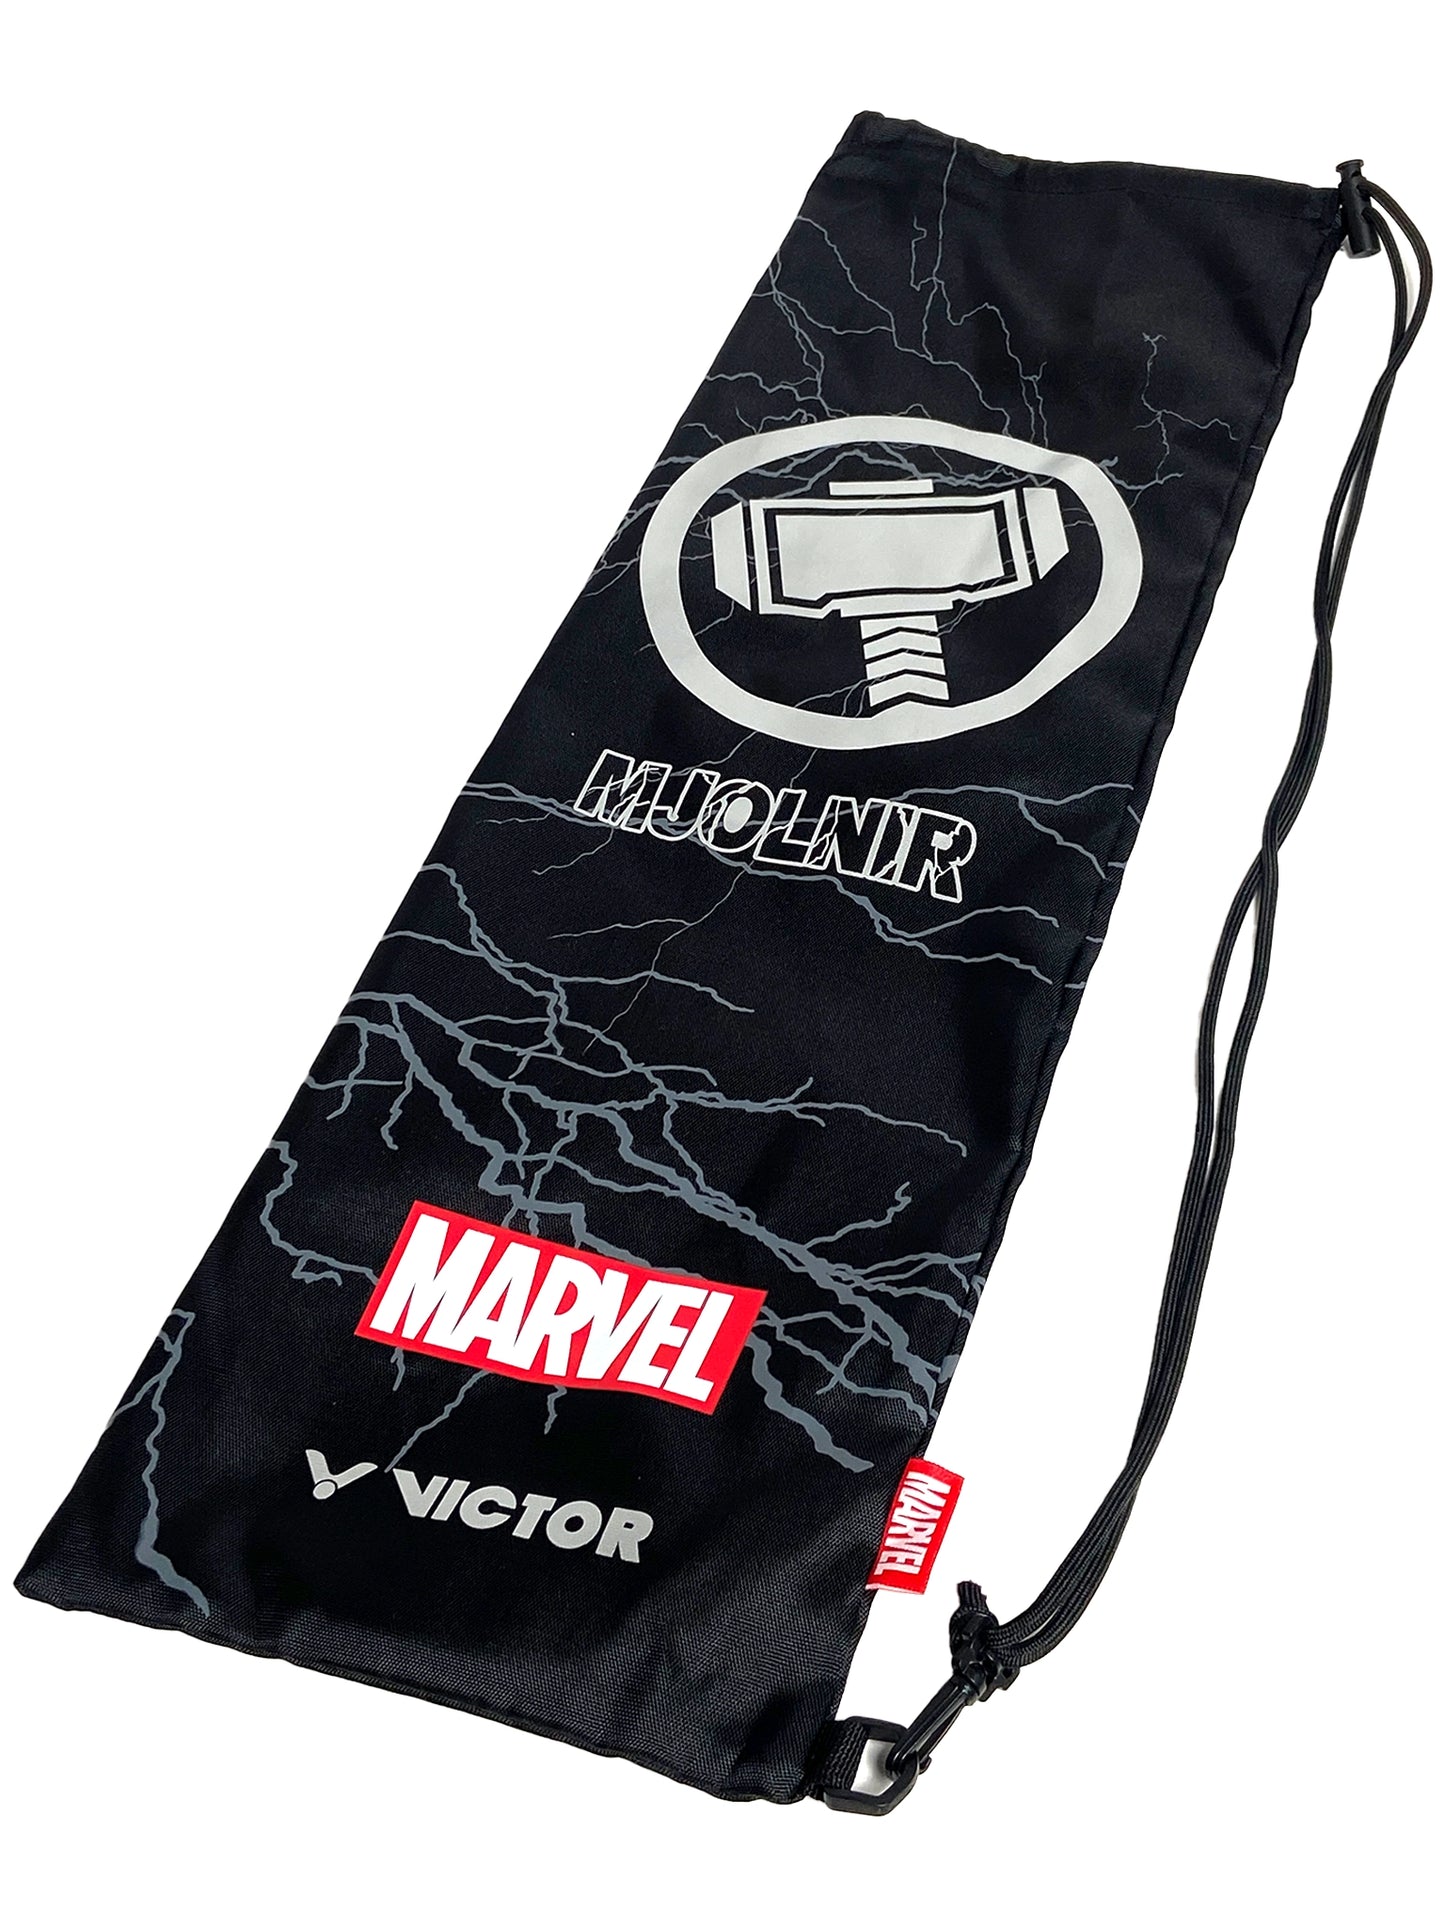 Victor X Marvel Mjolnir Metallic Limitée Non cordée